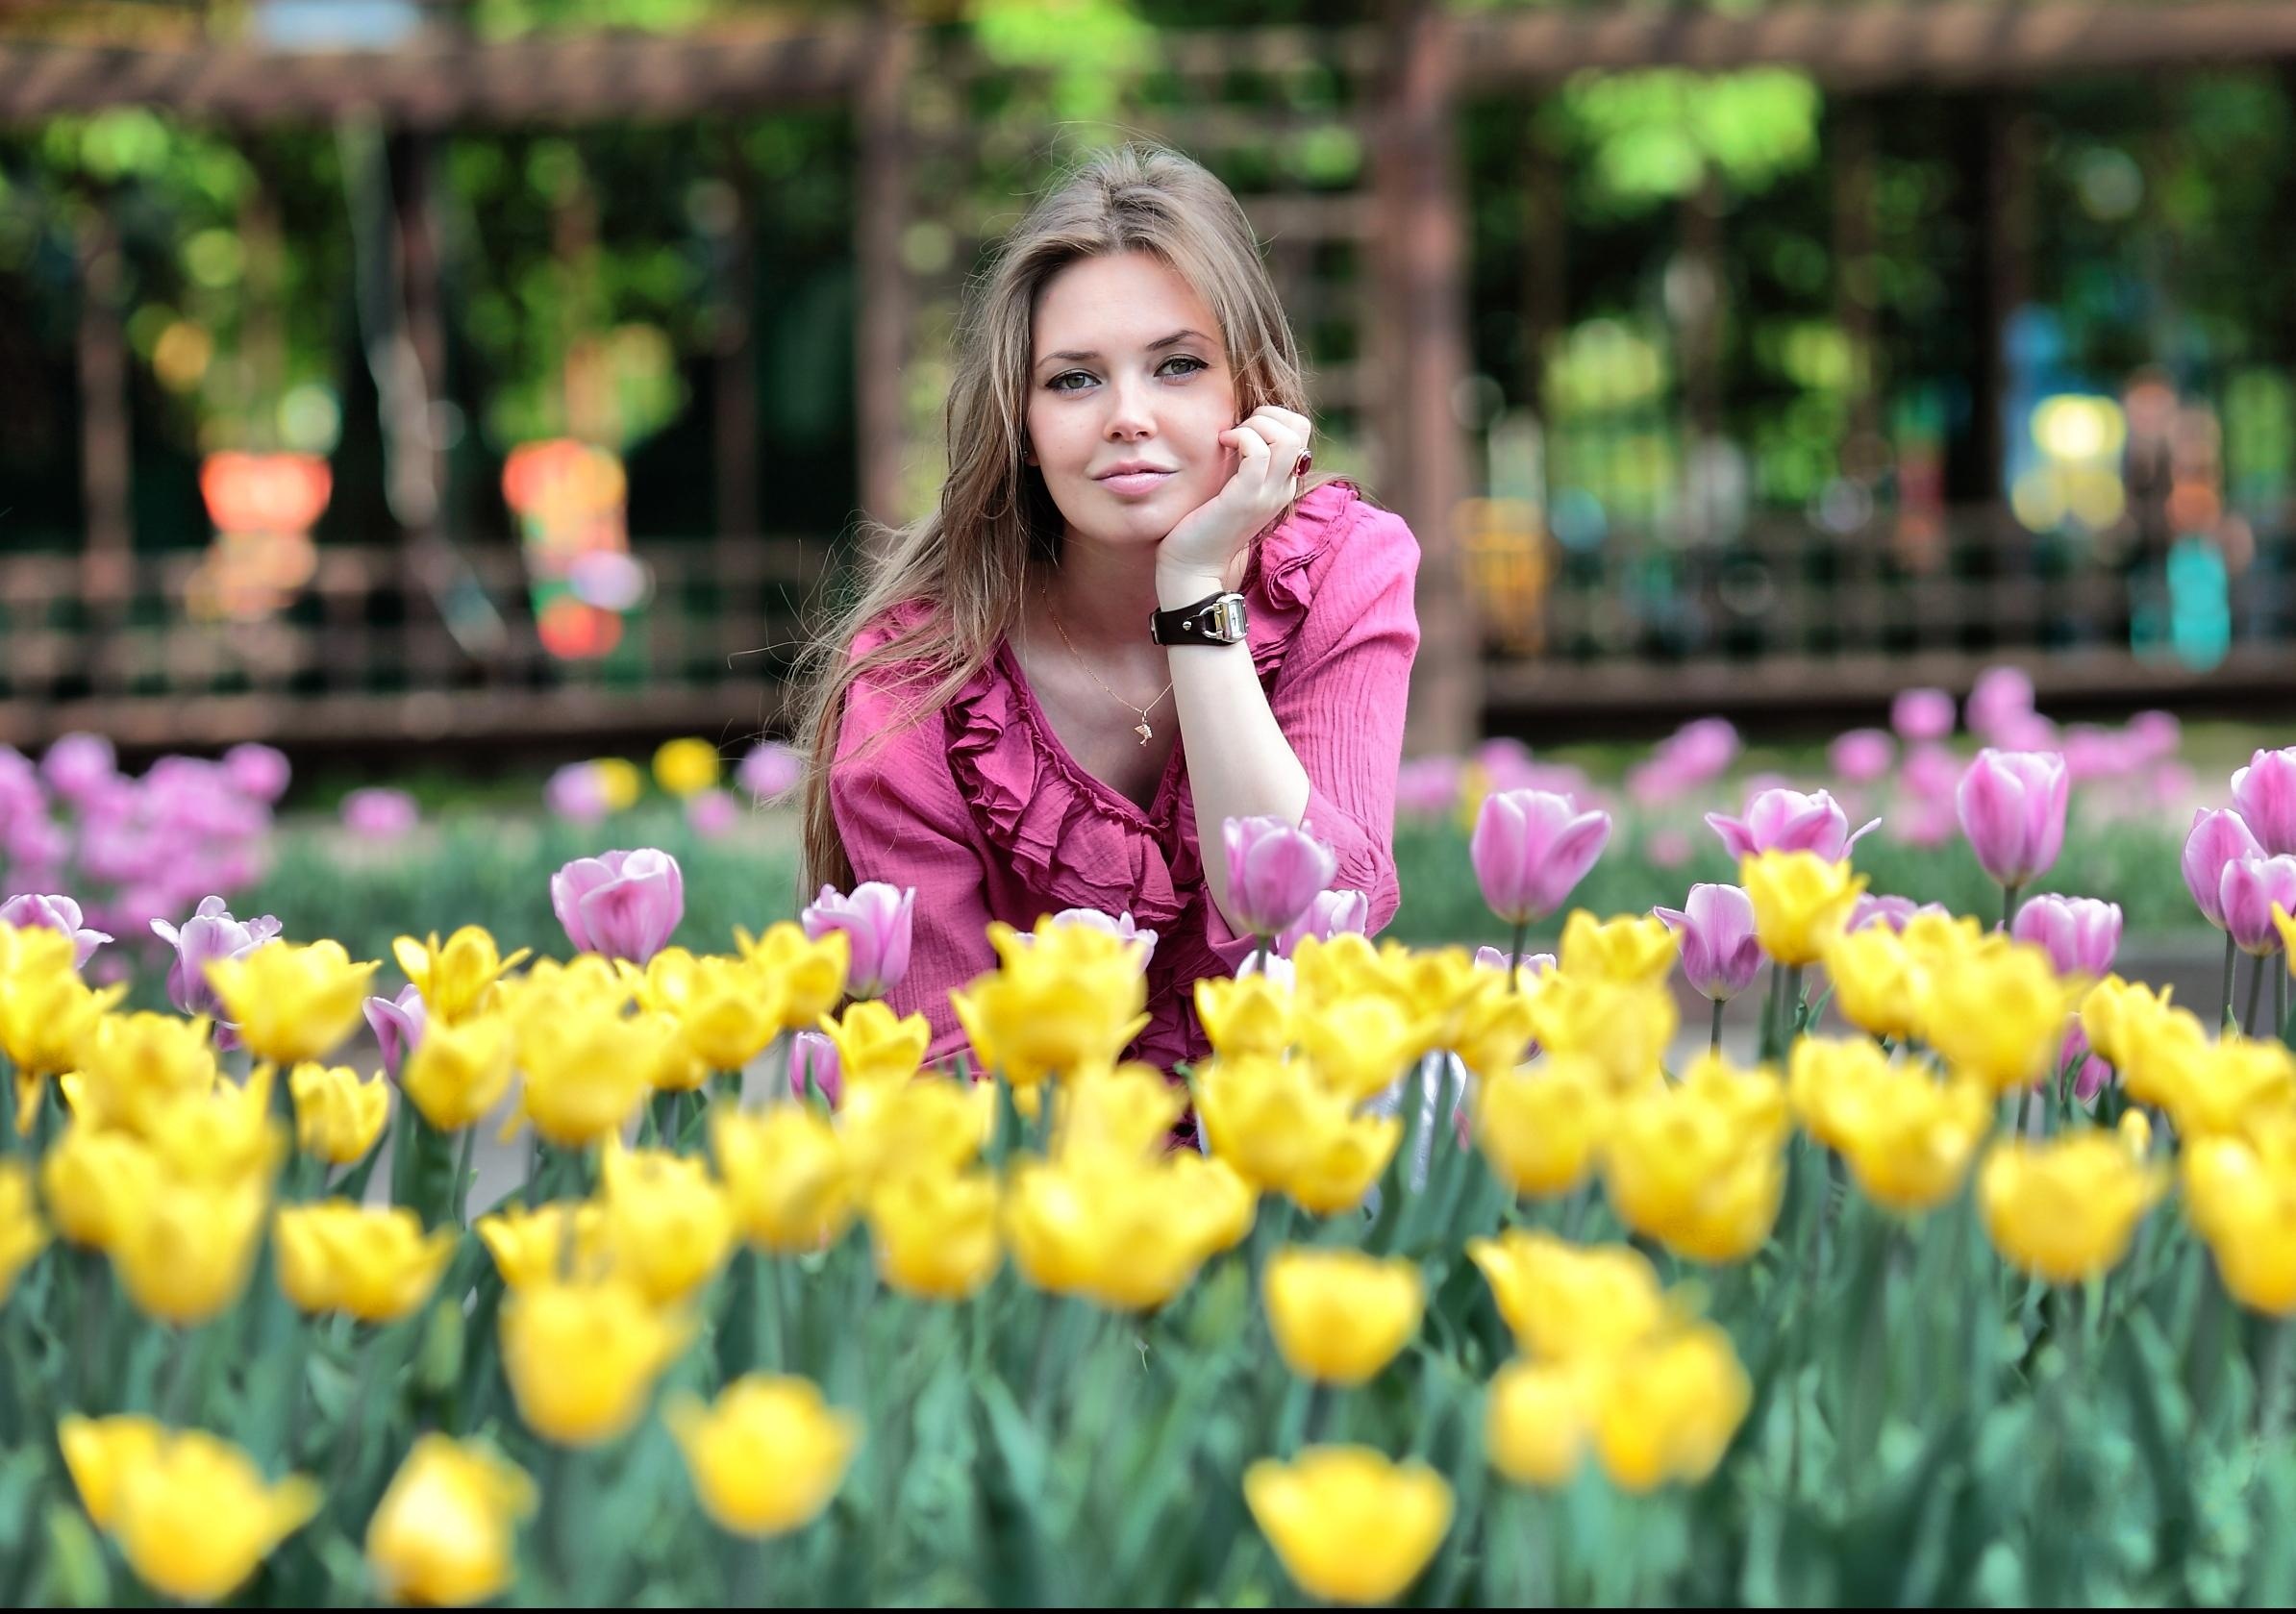 Красивое фото с тюльпанами девушки. Женщина с тюльпанами. Фотосессия с тюльпанами. Букет цветов для девушки.